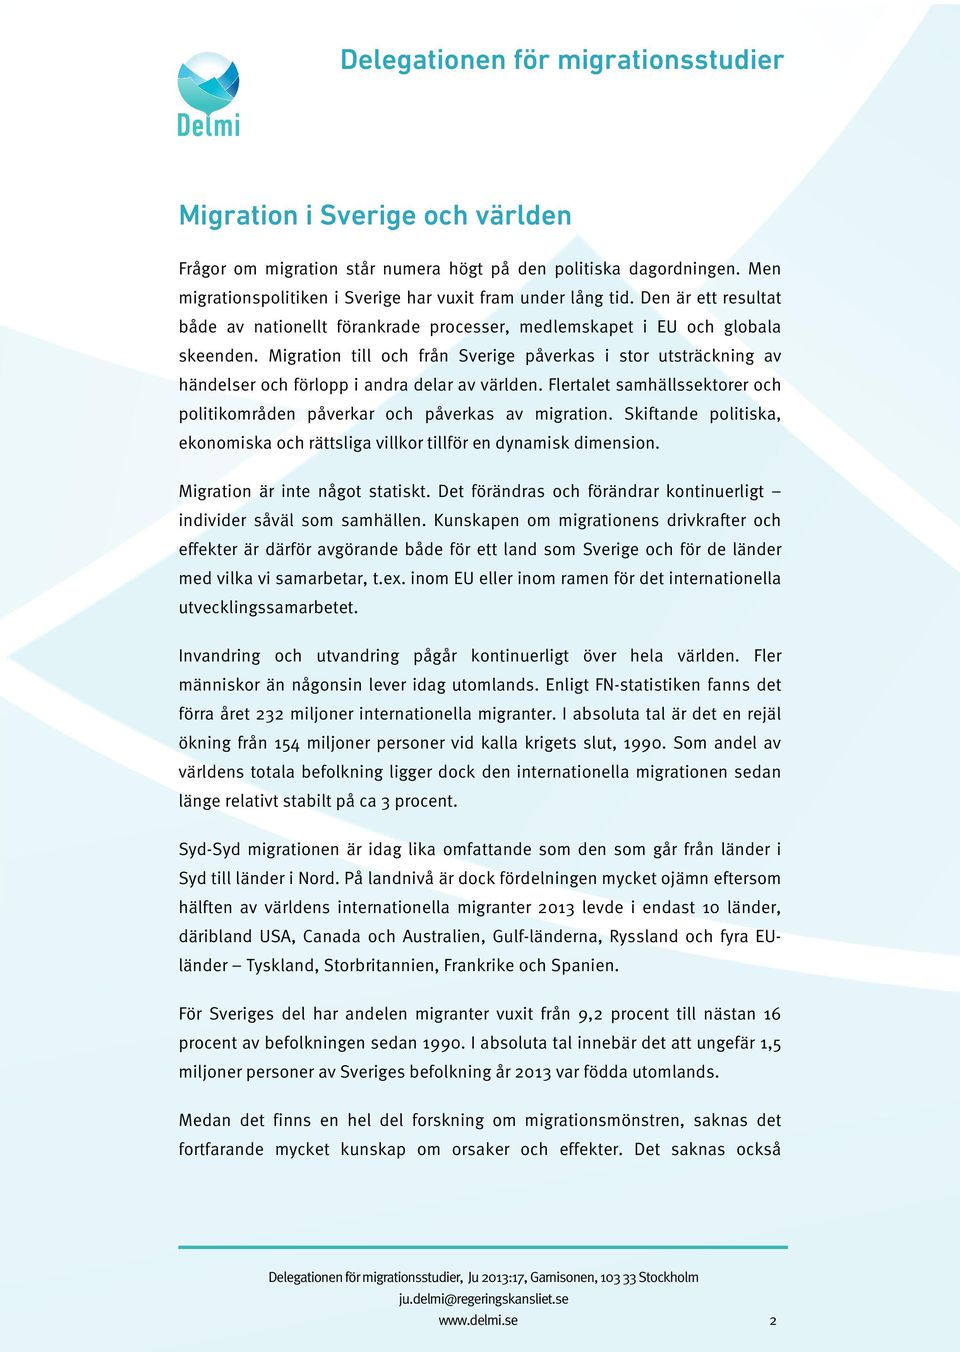 Migration till och från Sverige påverkas i stor utsträckning av händelser och förlopp i andra delar av världen. Flertalet samhällssektorer och politikområden påverkar och påverkas av migration.